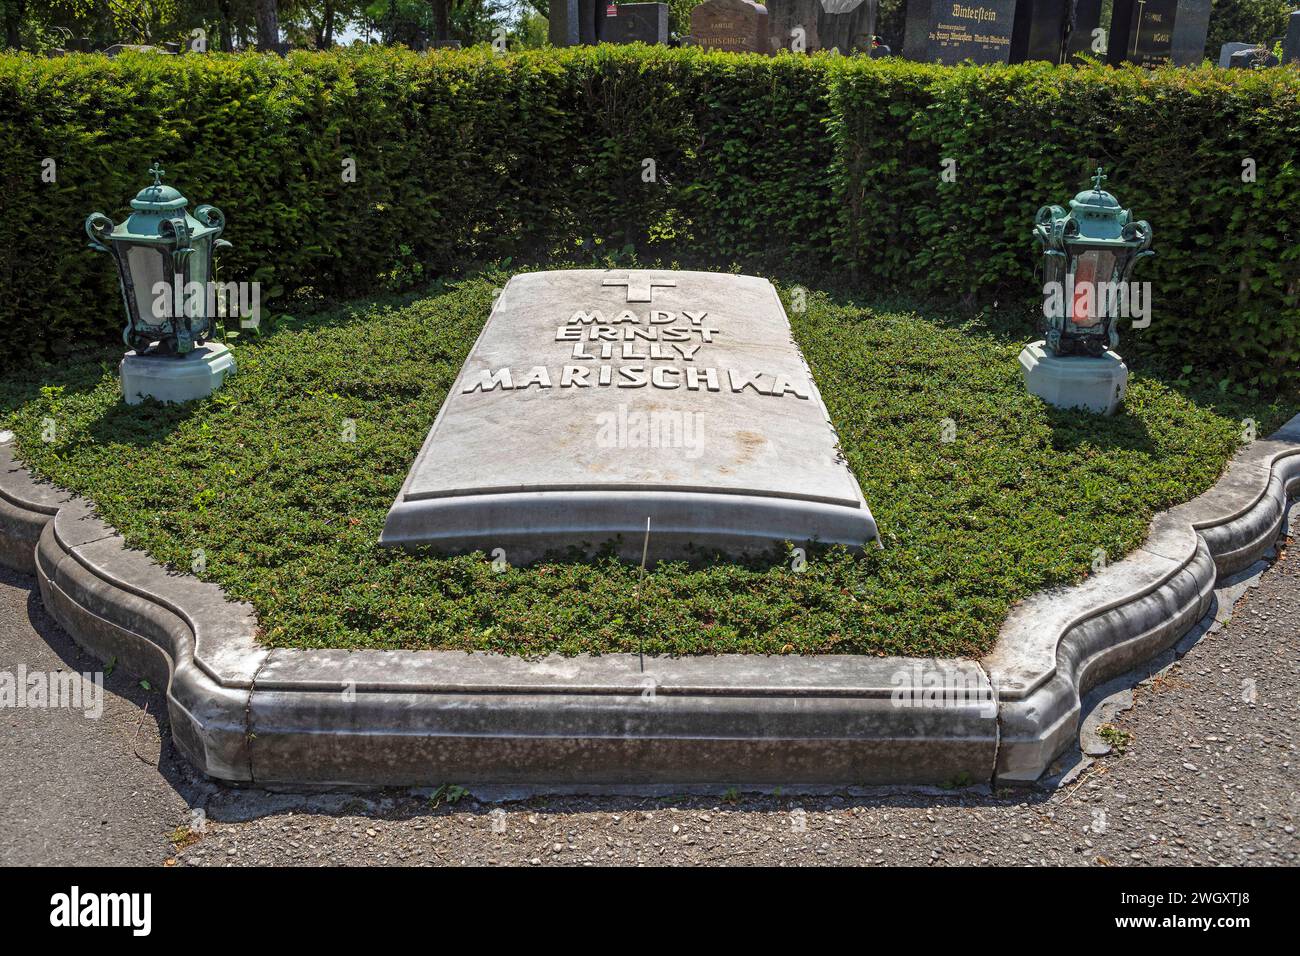 Ernst Marischka, Director And Actor, 1893 - 1963, Grab Am Hietzinger Friedhof In Vienna, Austria Stock Photo